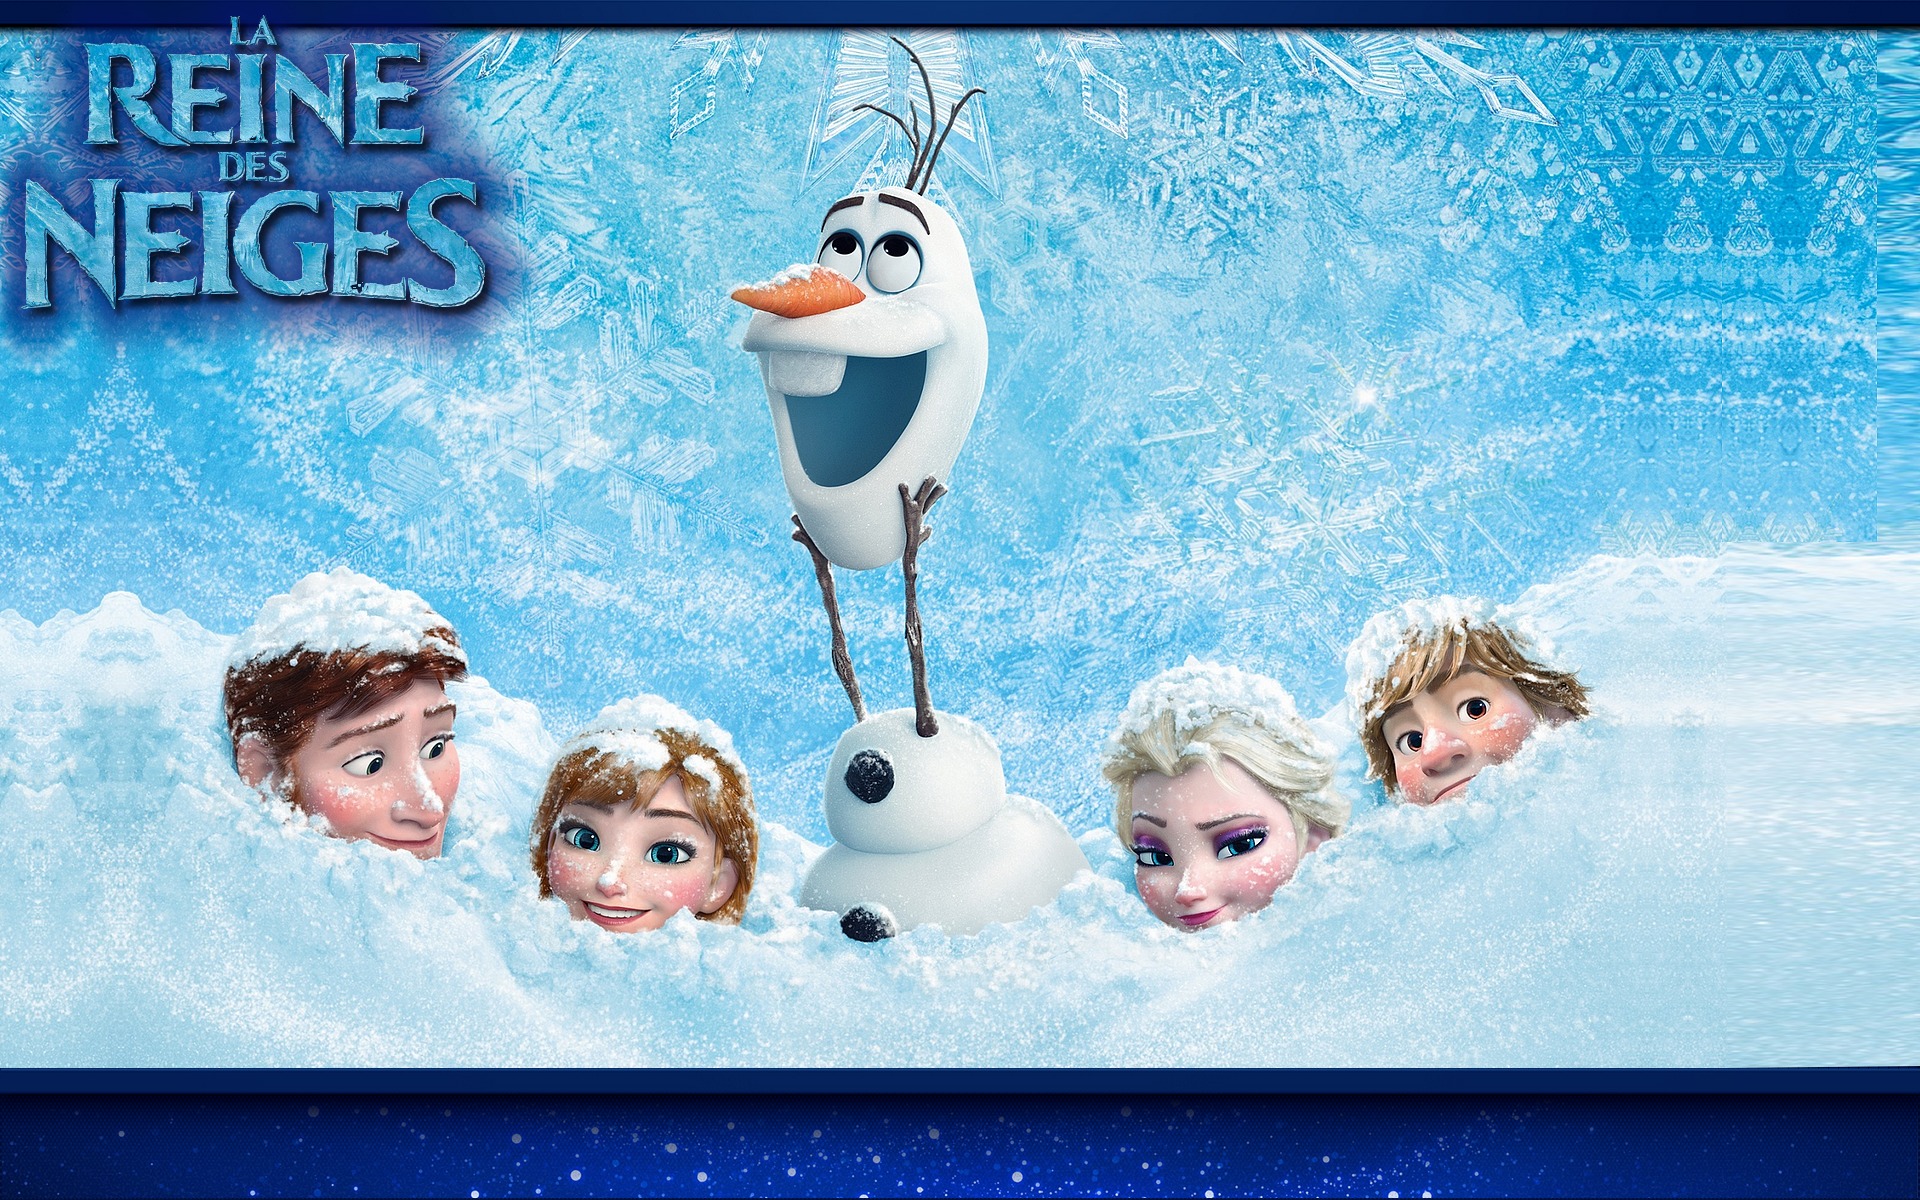 Personnages de La Reine des neiges dans la neige Fond d'écran - Image arrière-plan - Wallpaper Favorisxp